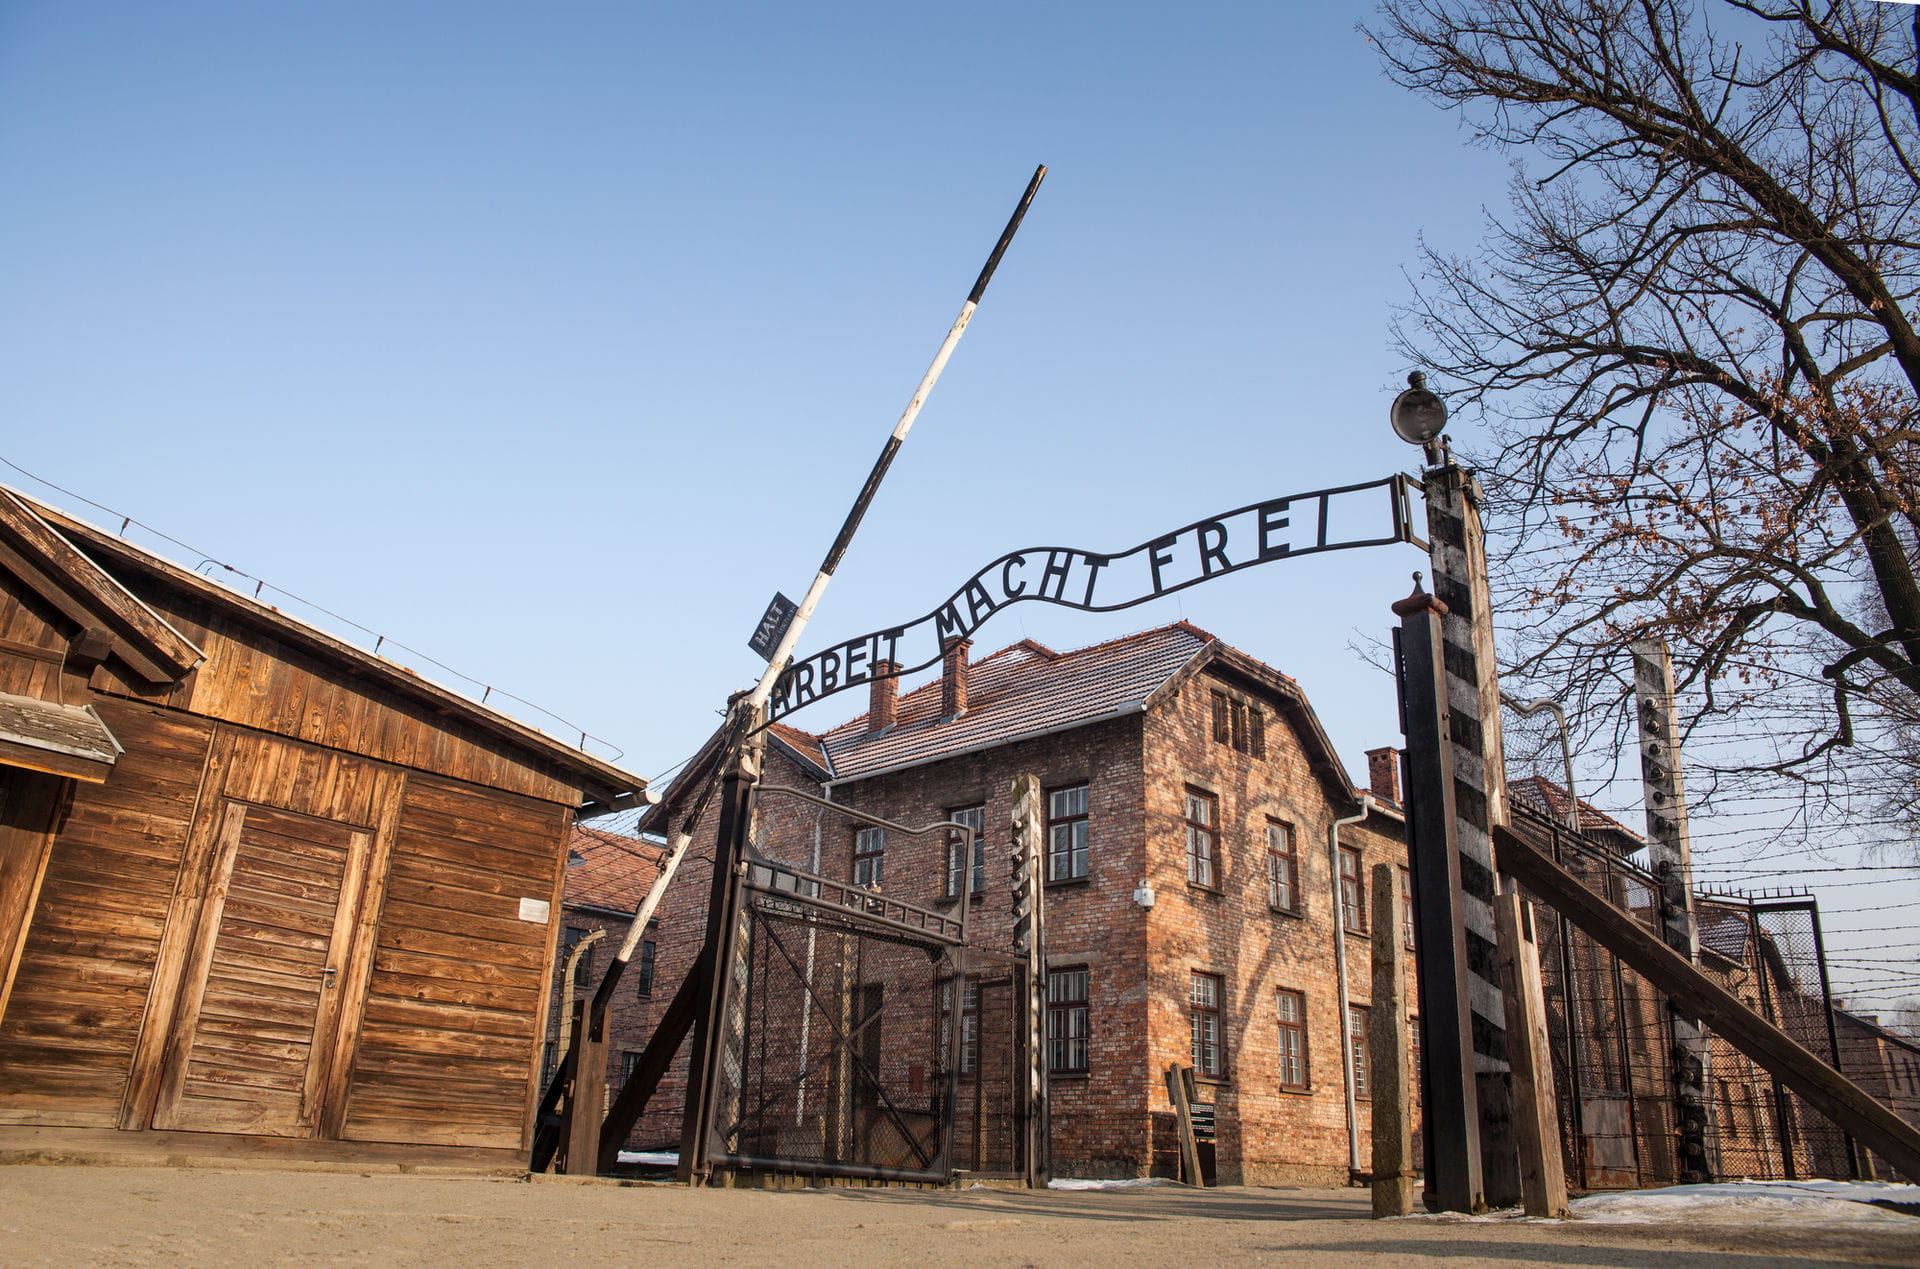 High quality hoto of Auschwitz Memorial - Poland